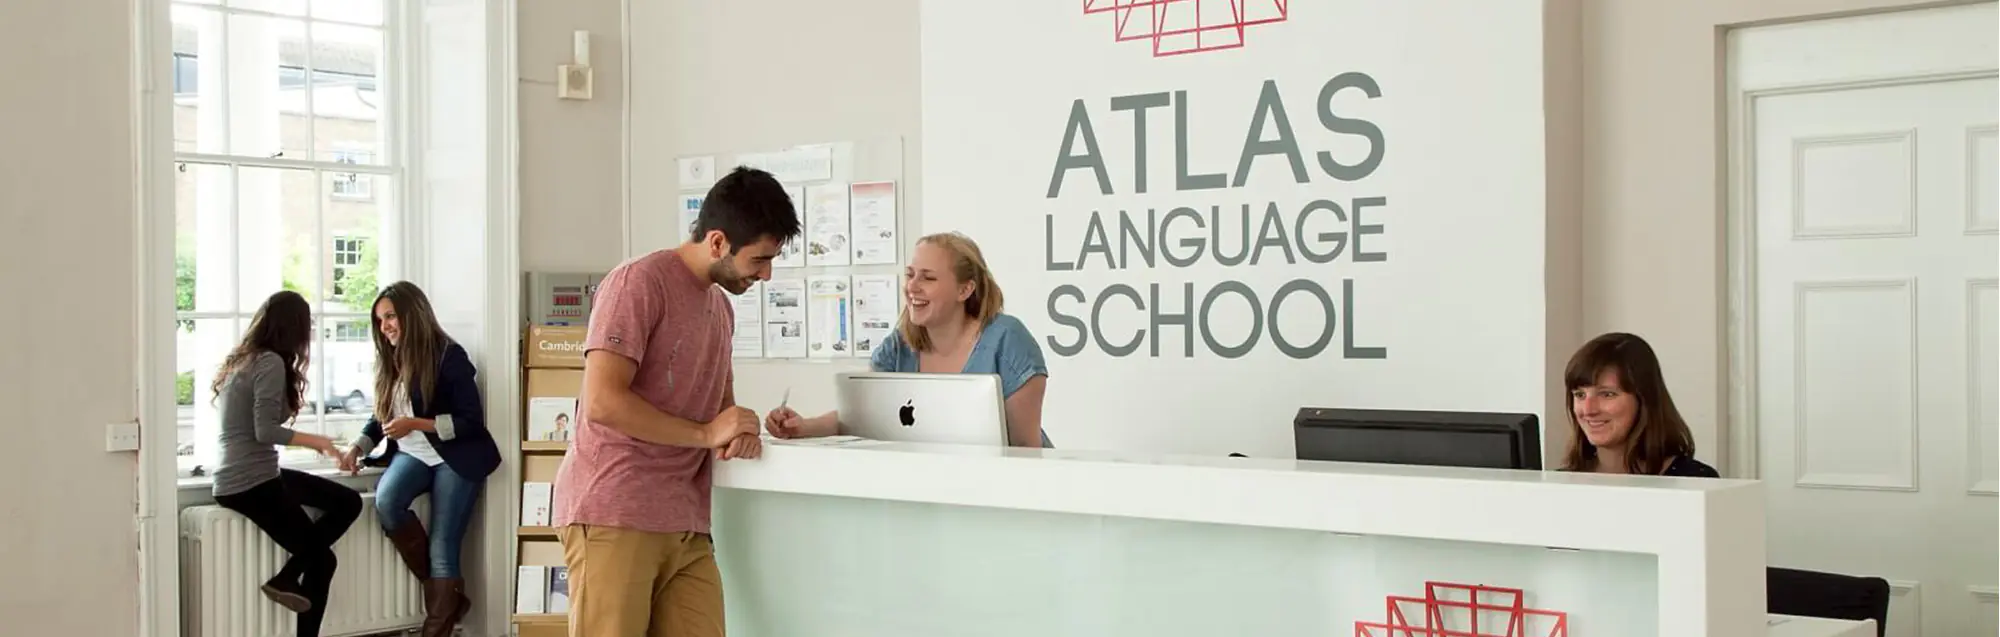 Atlas Language School : récits et évaluations